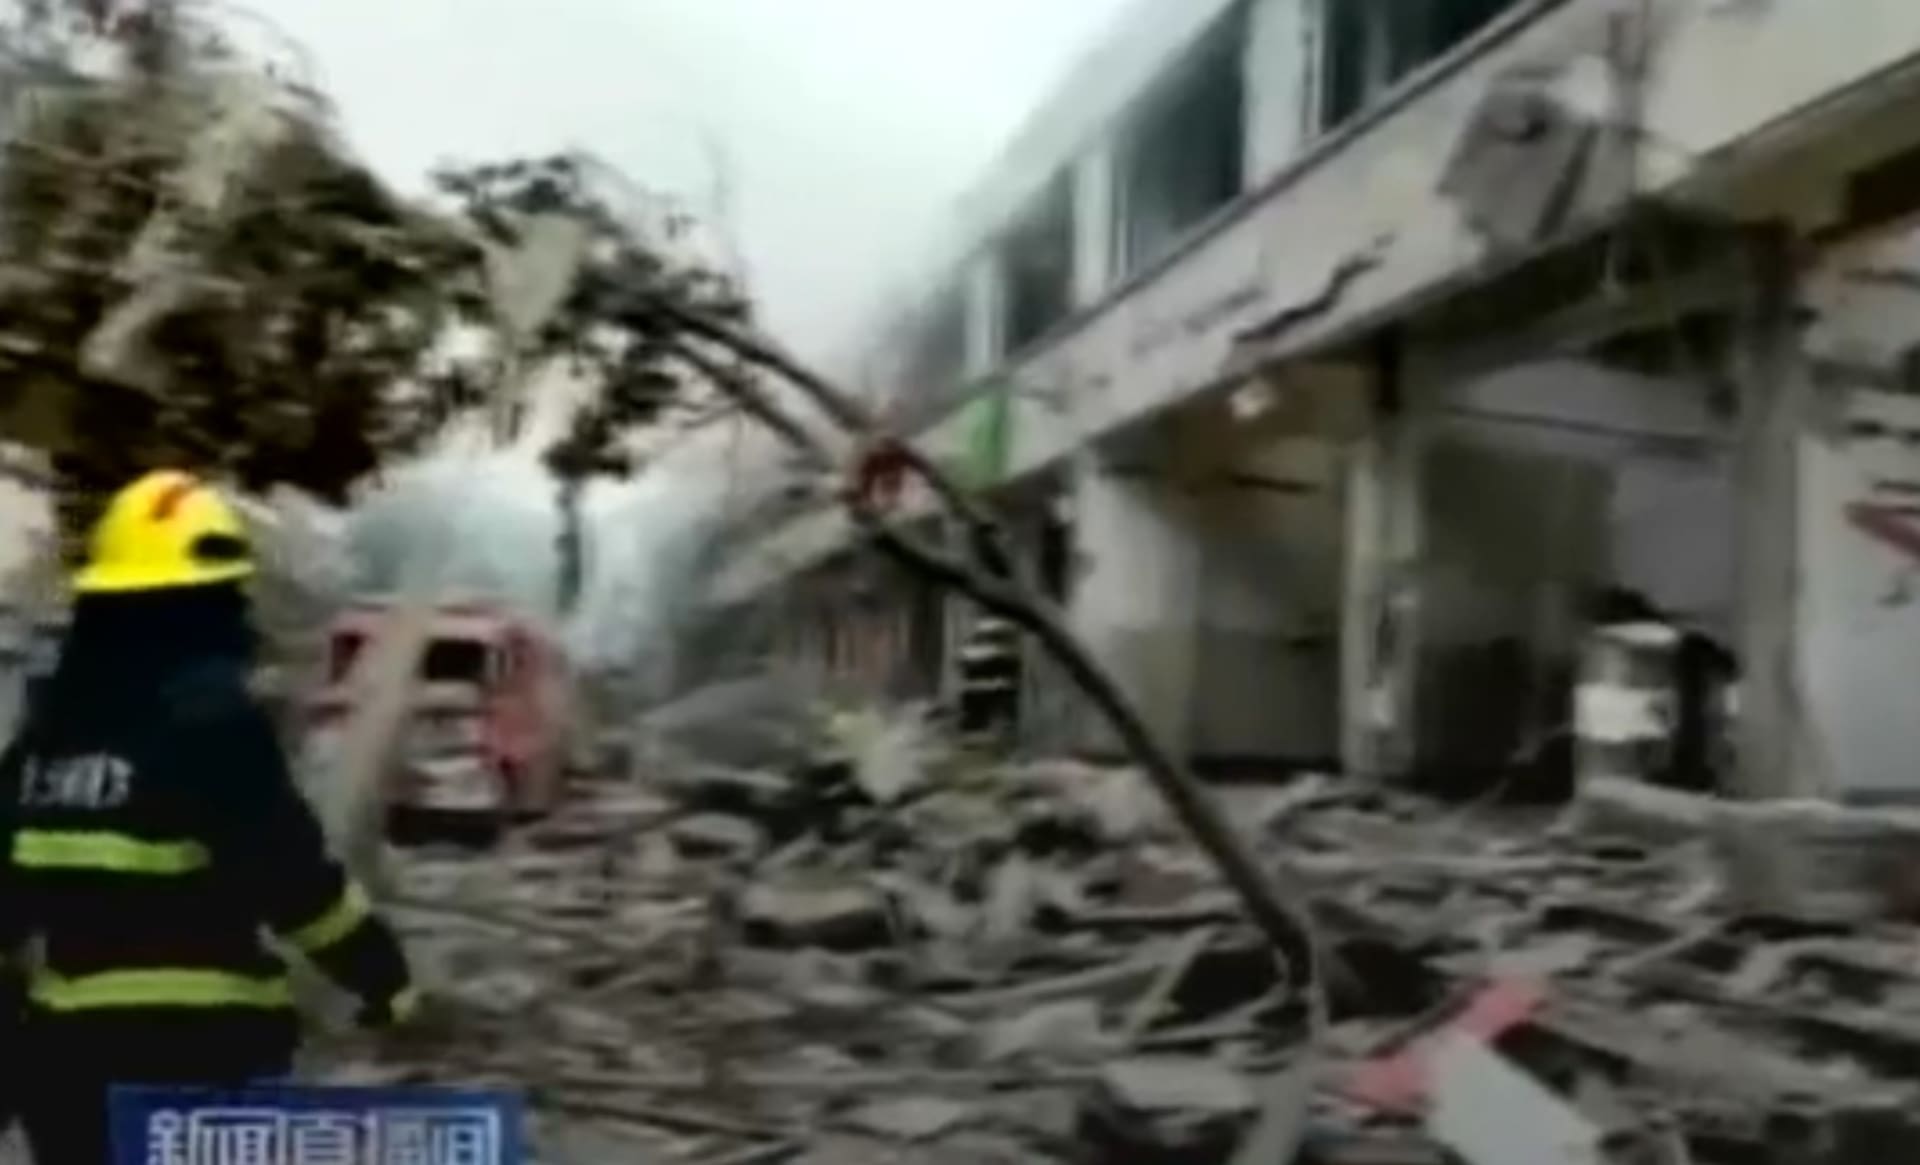 Výbuch plynu zabil časně zrána ve městě Š-jen v provincii Chu-pej v centrální Číně 12 lidí.